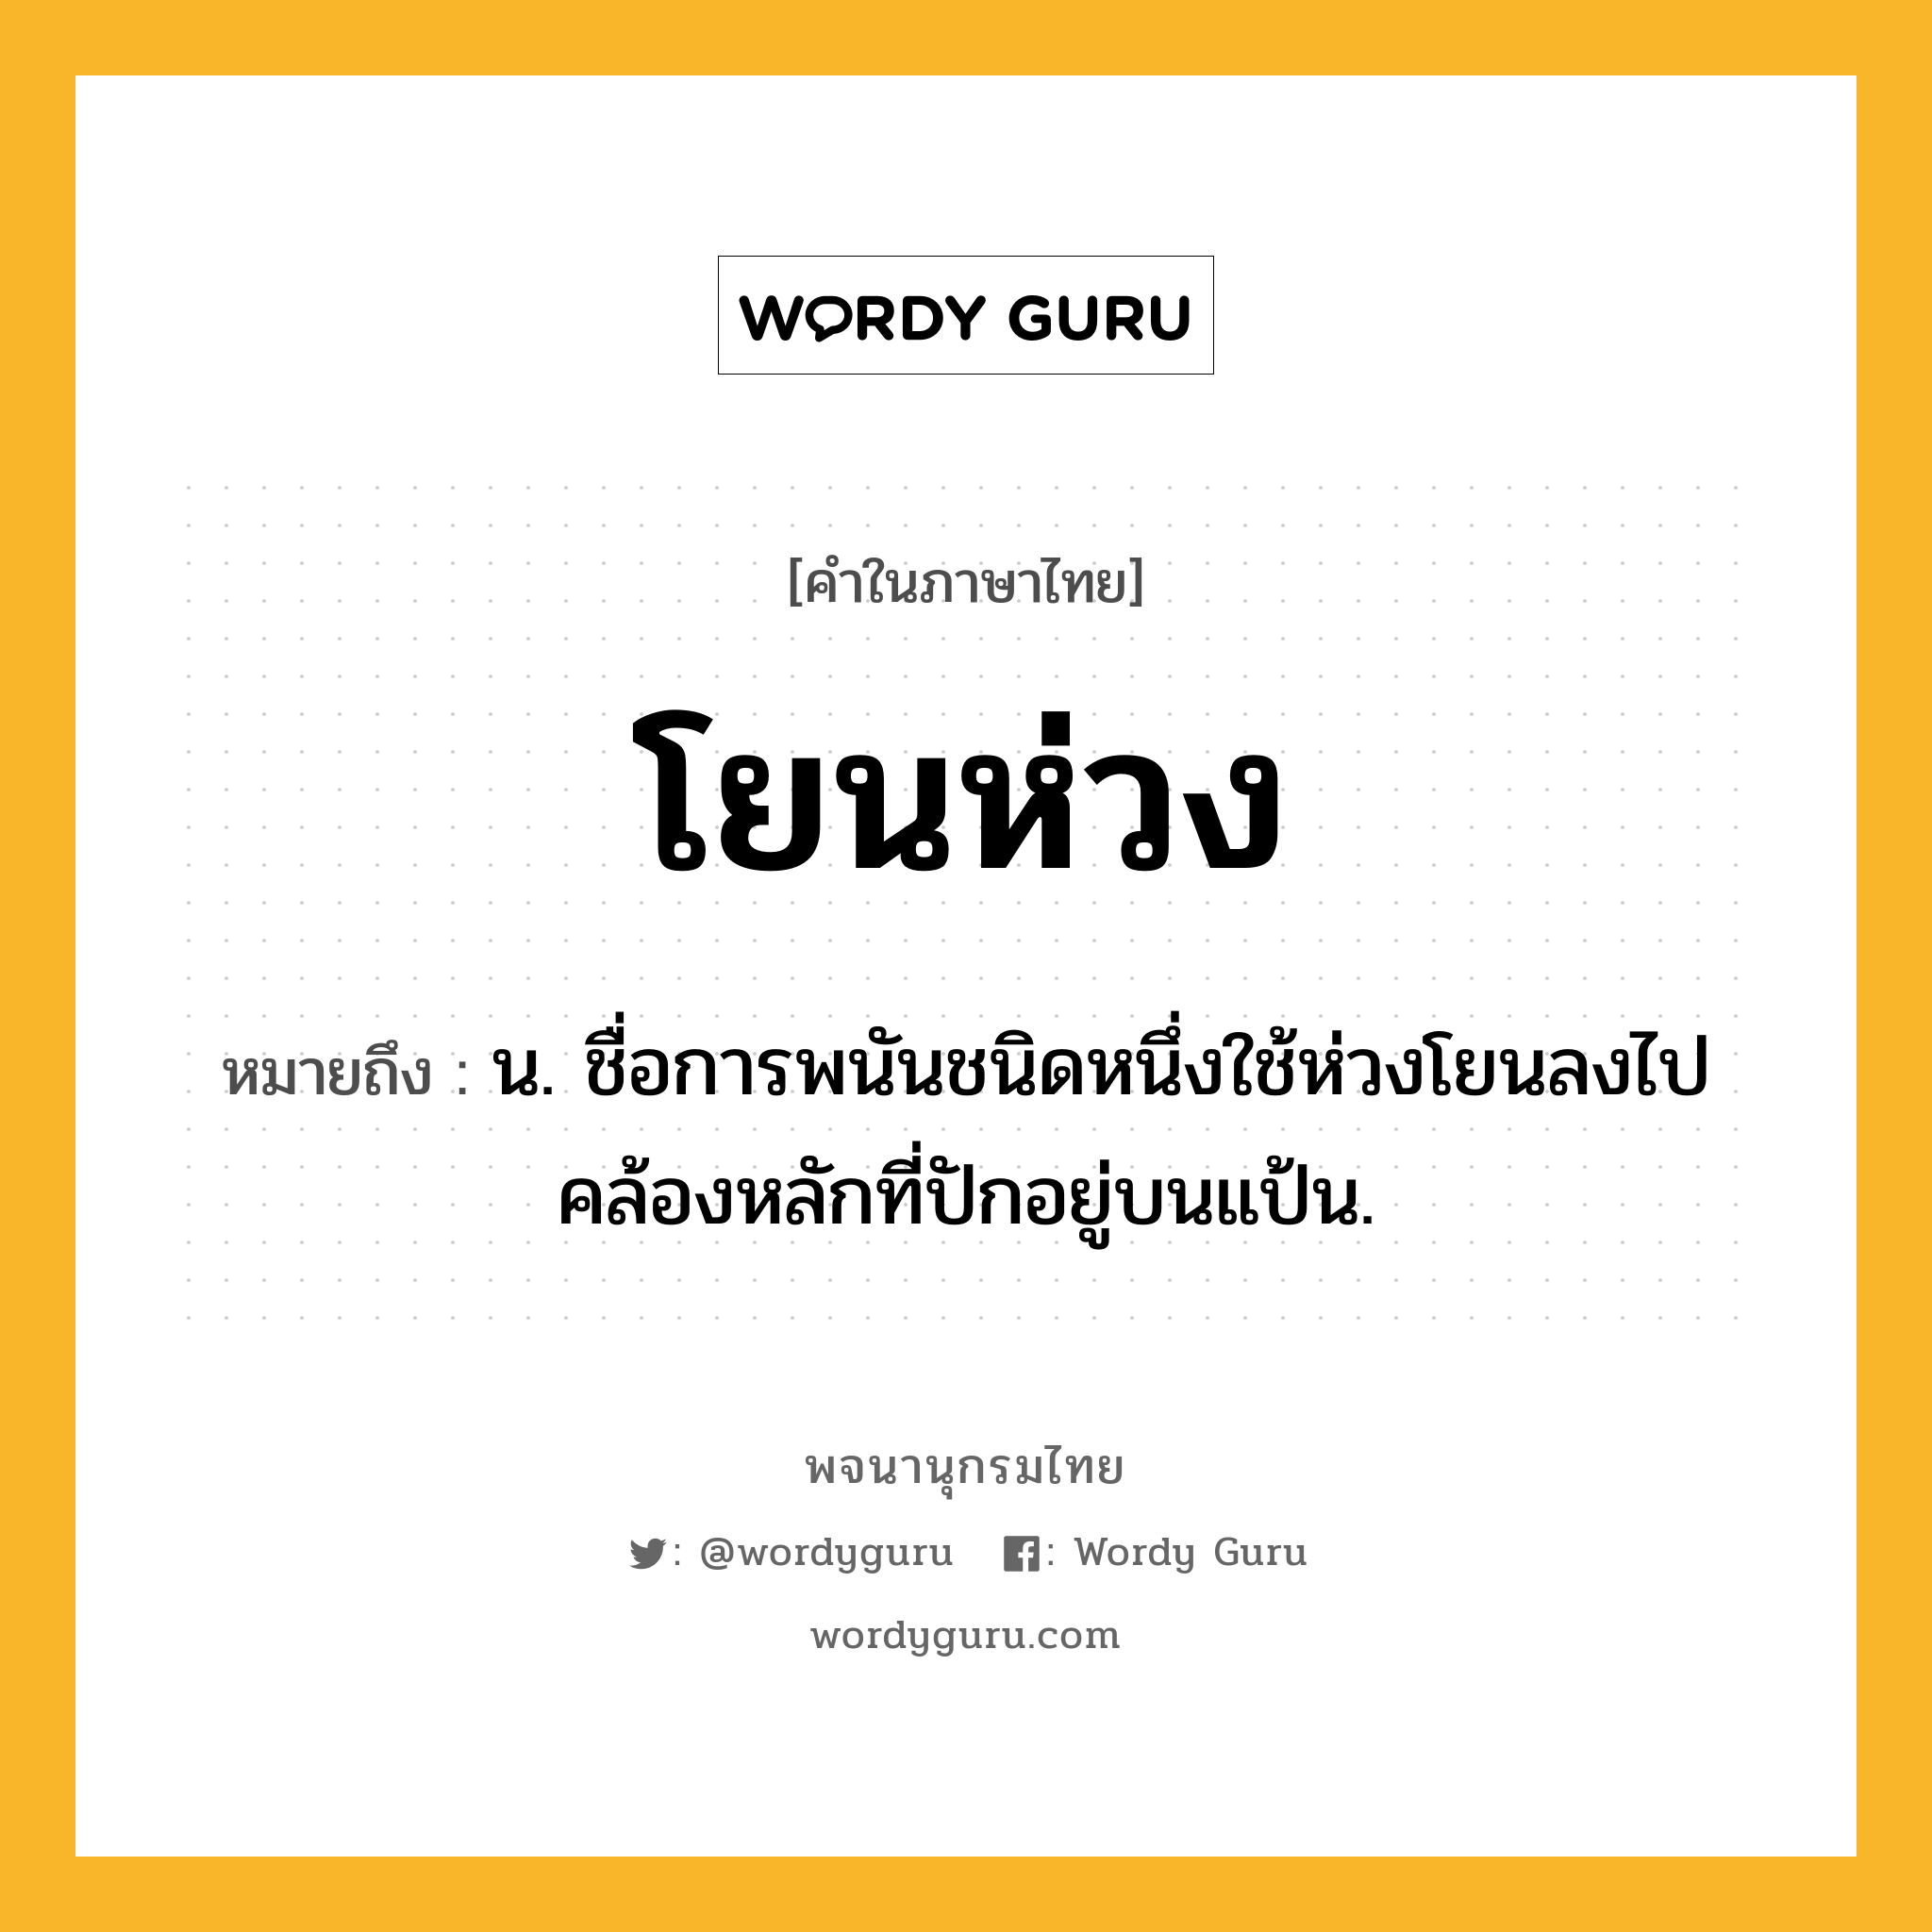 โยนห่วง ความหมาย หมายถึงอะไร?, คำในภาษาไทย โยนห่วง หมายถึง น. ชื่อการพนันชนิดหนึ่งใช้ห่วงโยนลงไปคล้องหลักที่ปักอยู่บนแป้น.